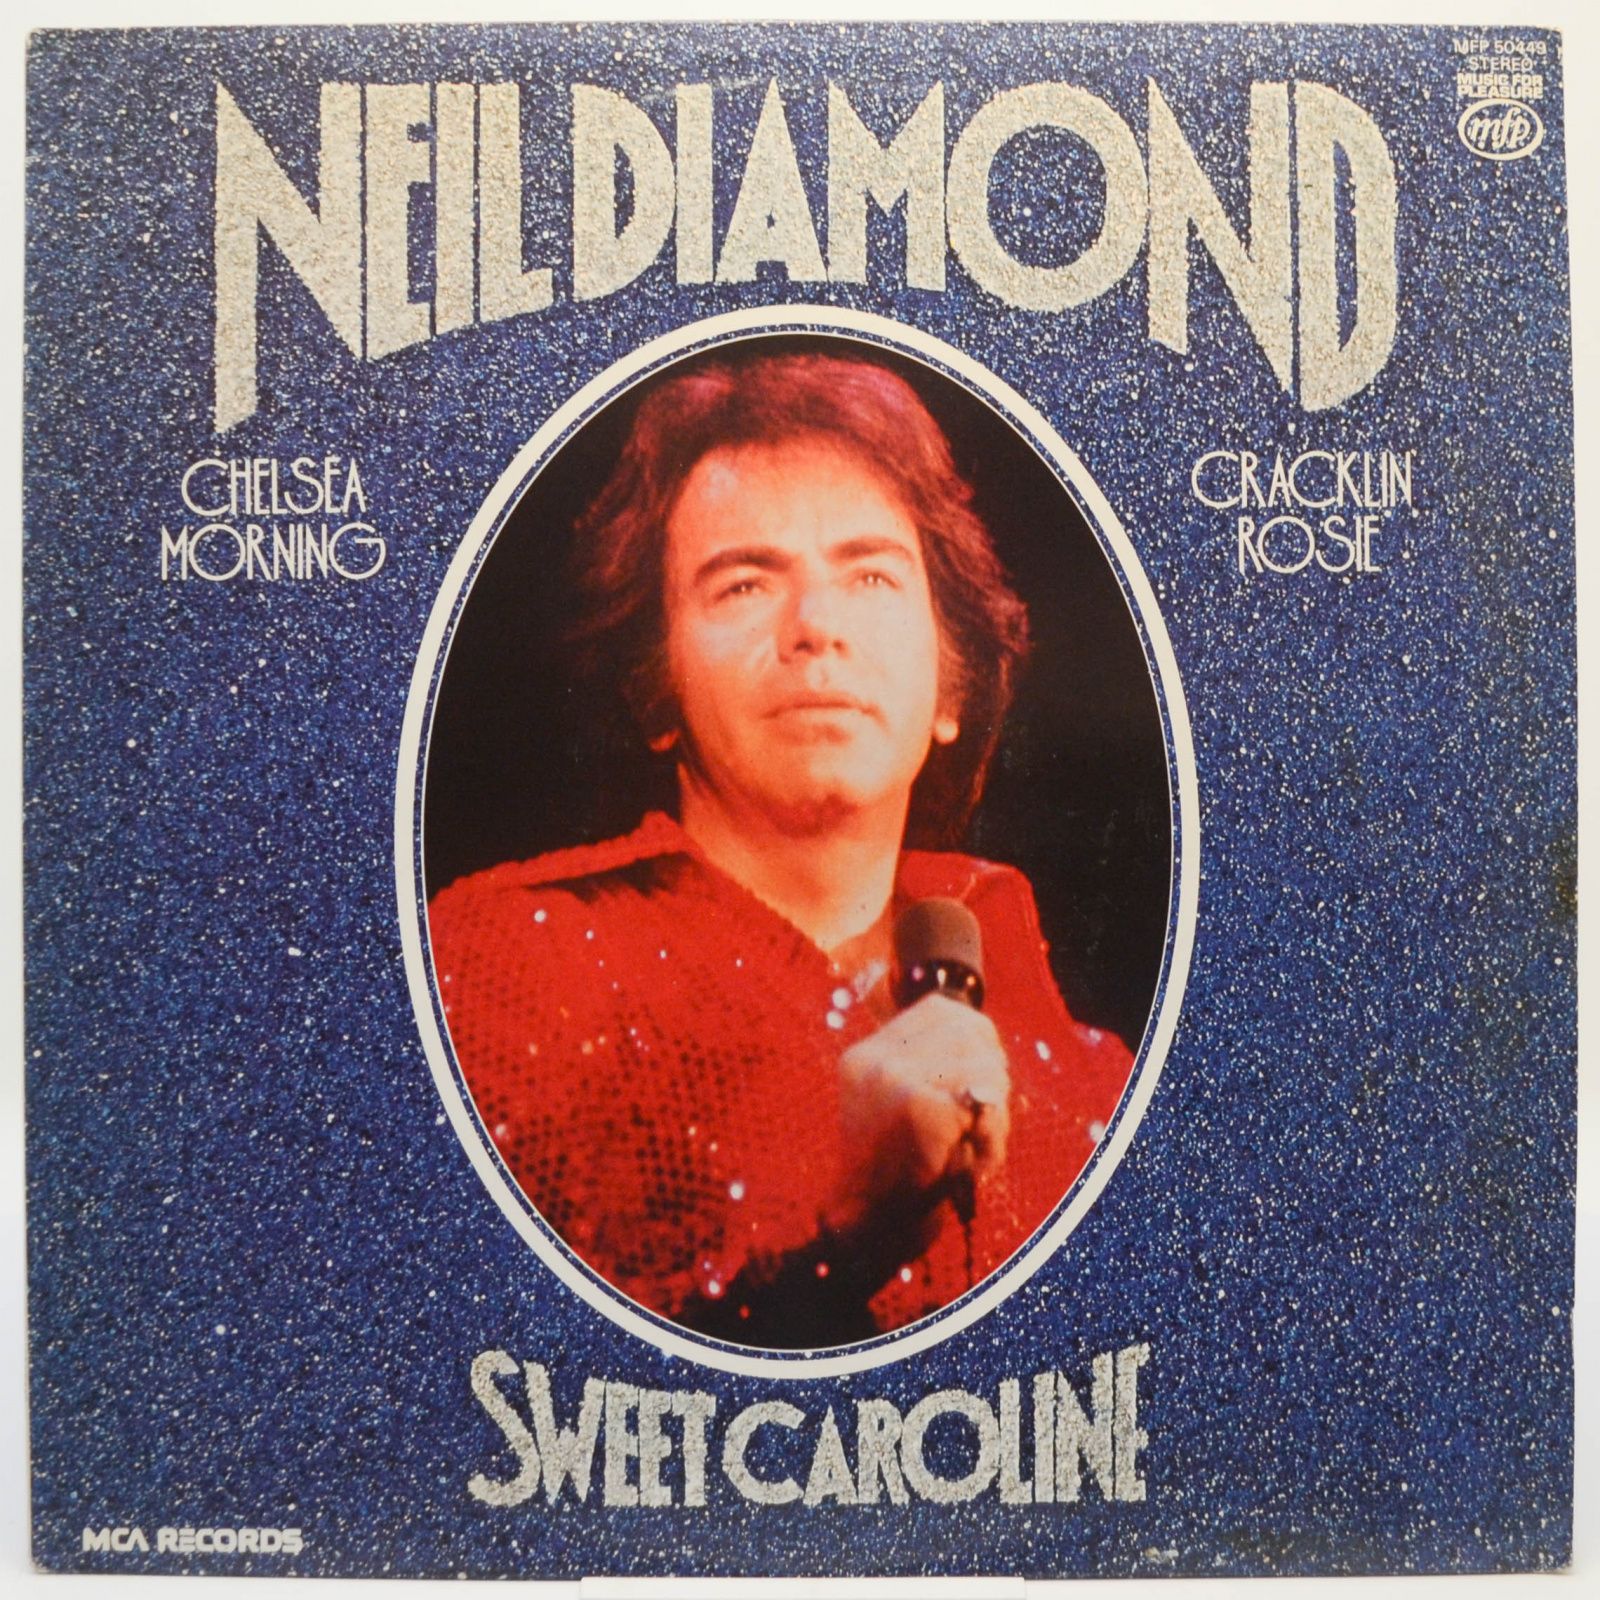 Sweet Caroline (UK), 1978